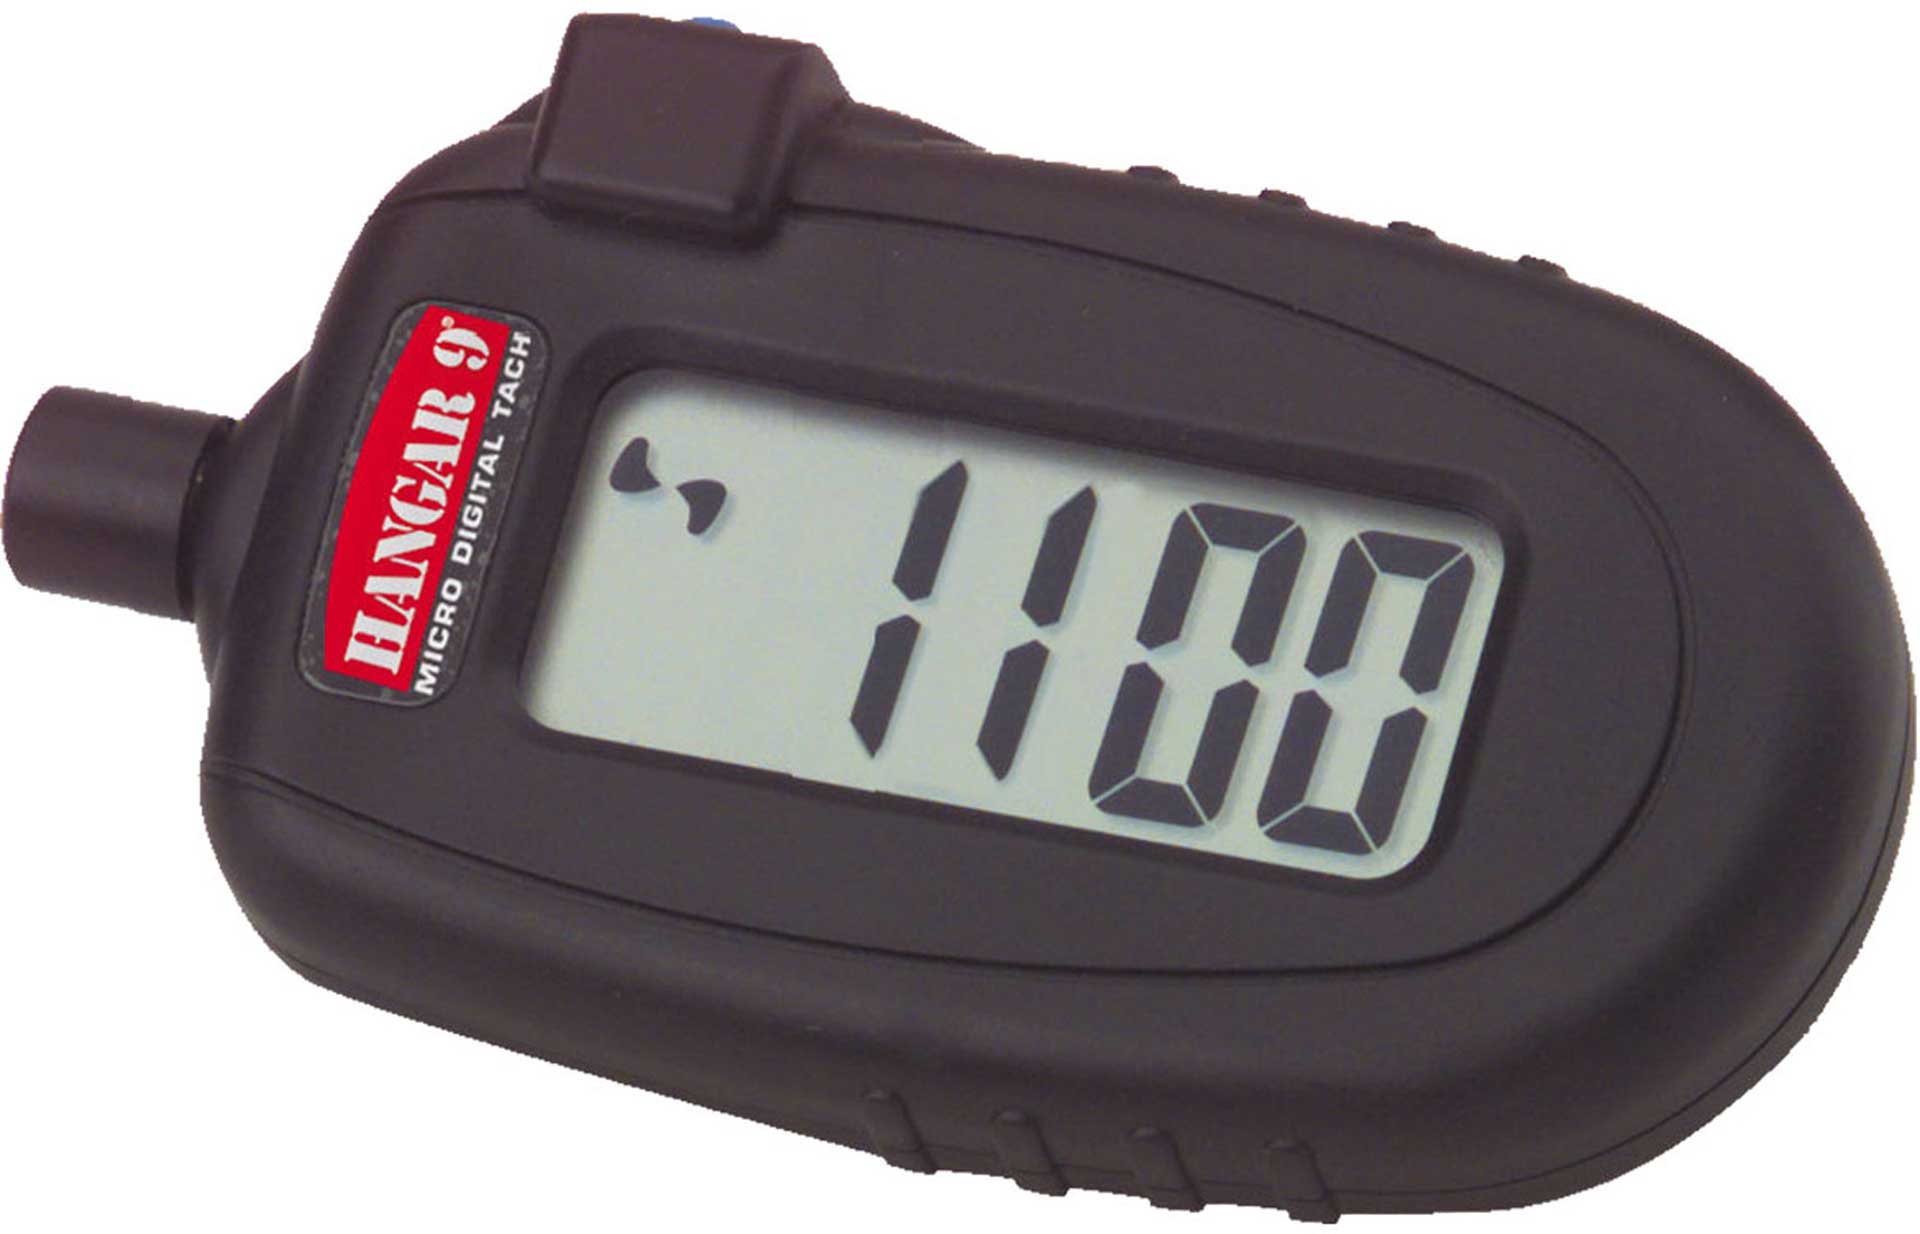 Tachometer HANGAR 9 digital